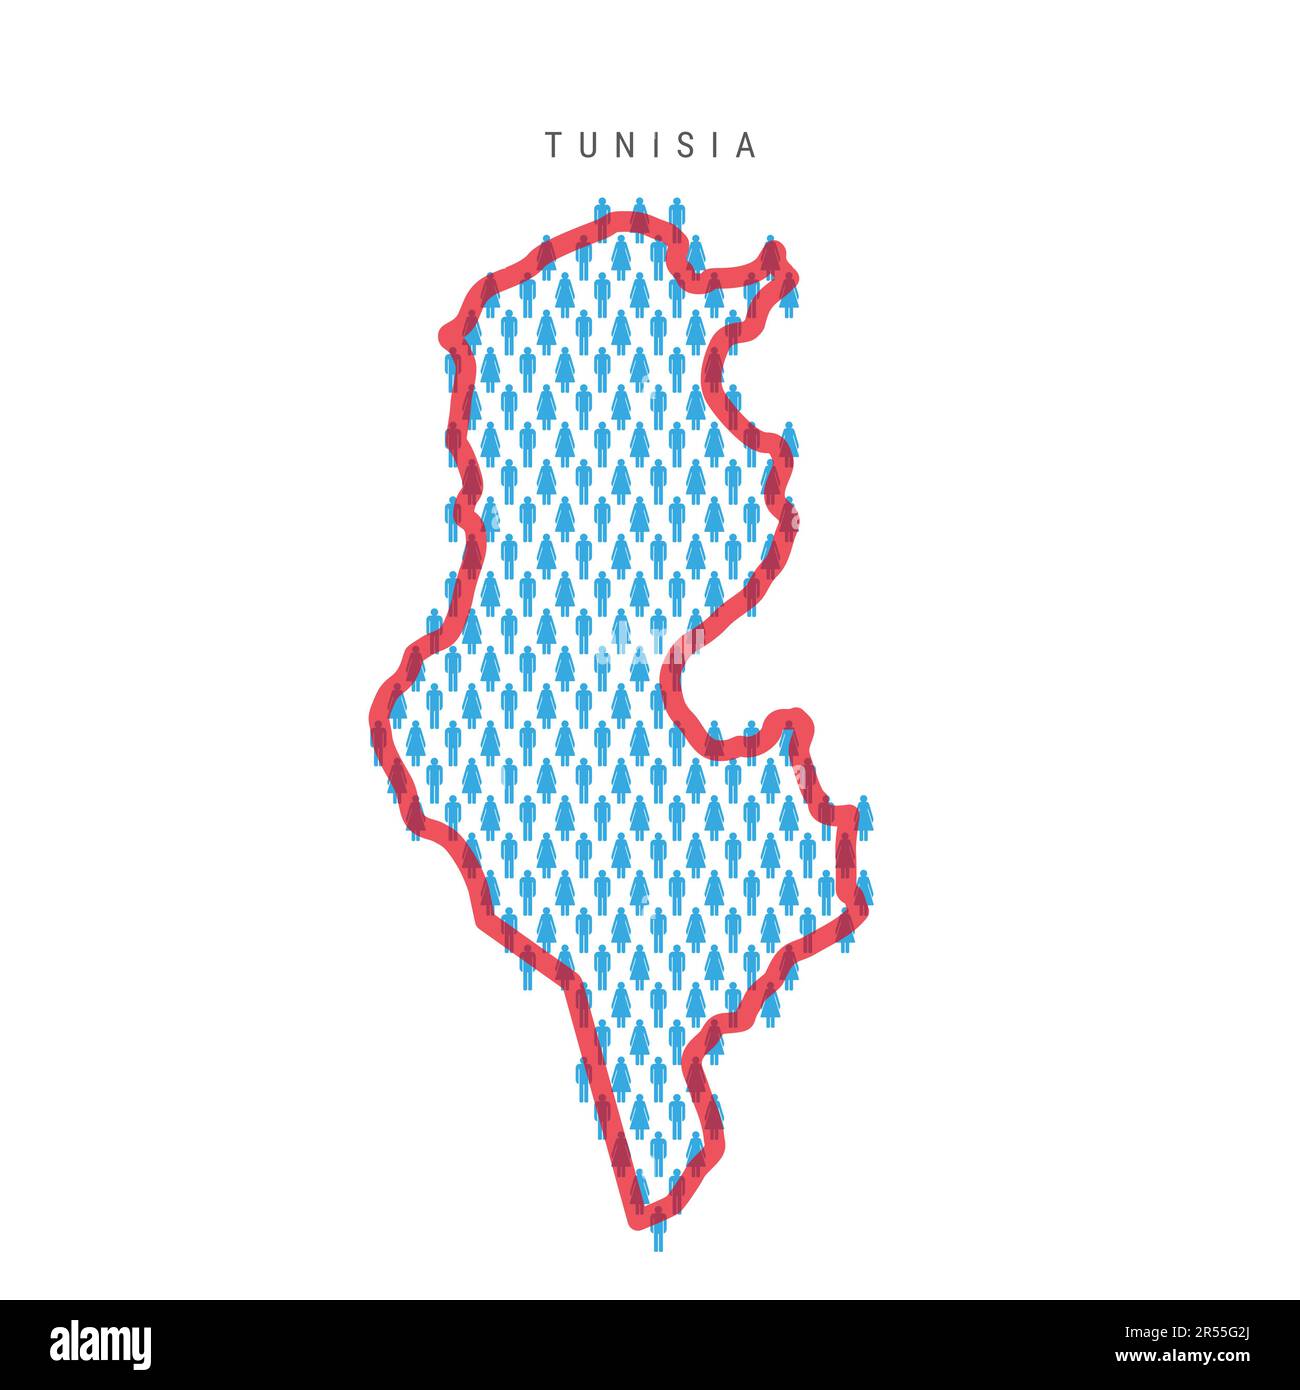 Bevölkerungskarte Tunesien. Striche-Figuren Karte der tunesischen Bevölkerung mit auffälliger roter, durchsichtiger Landesgrenze. Muster von Männer- und Frauensymbolen. Isolierter Vektor il Stock Vektor